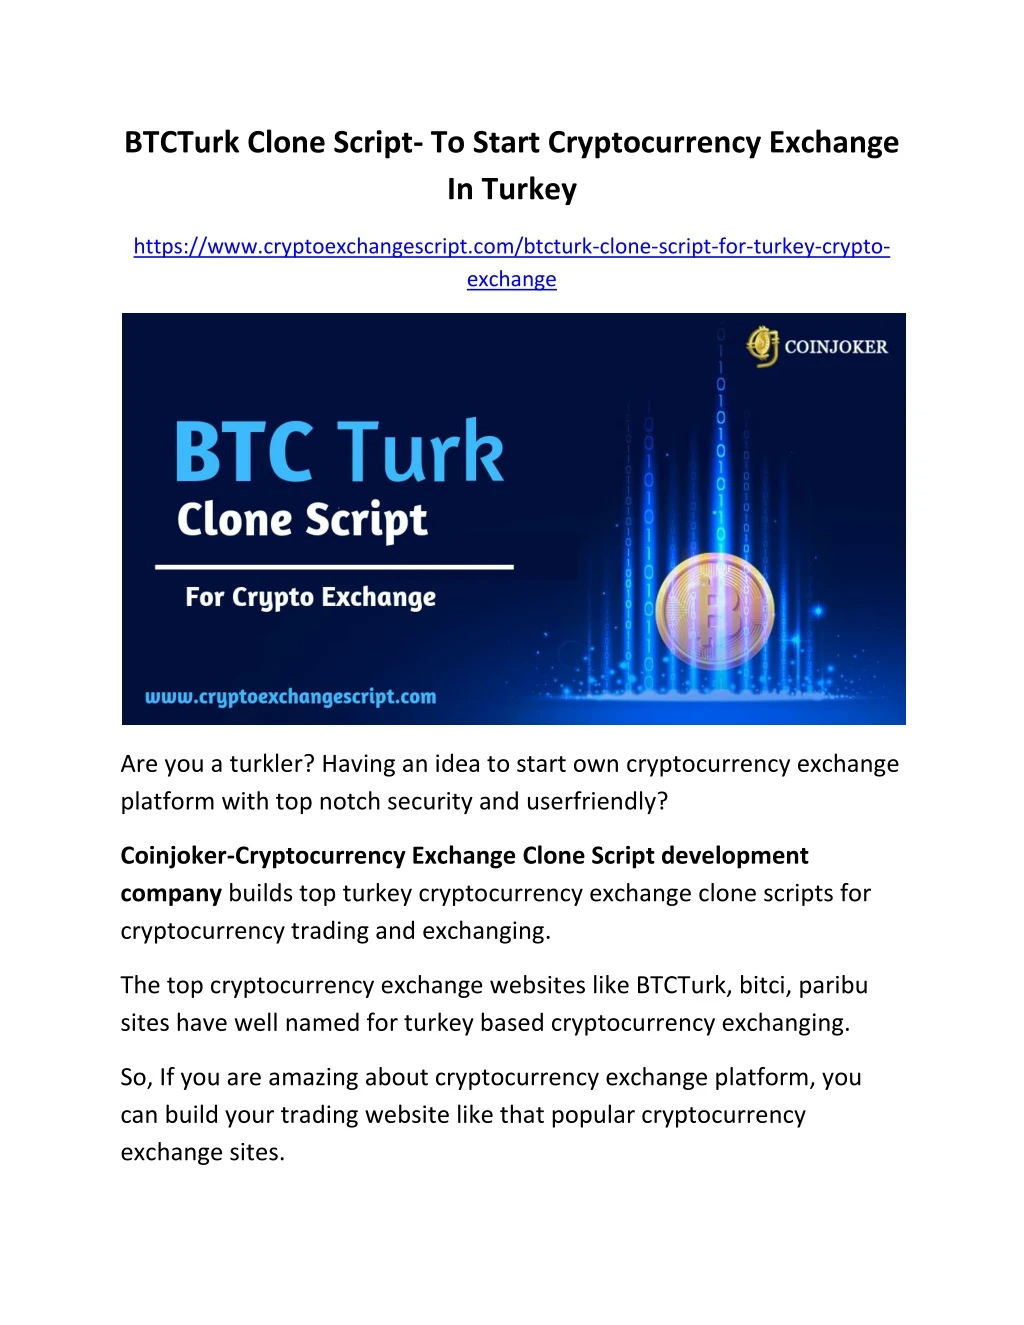 btcturk clone script to start cryptocurrency